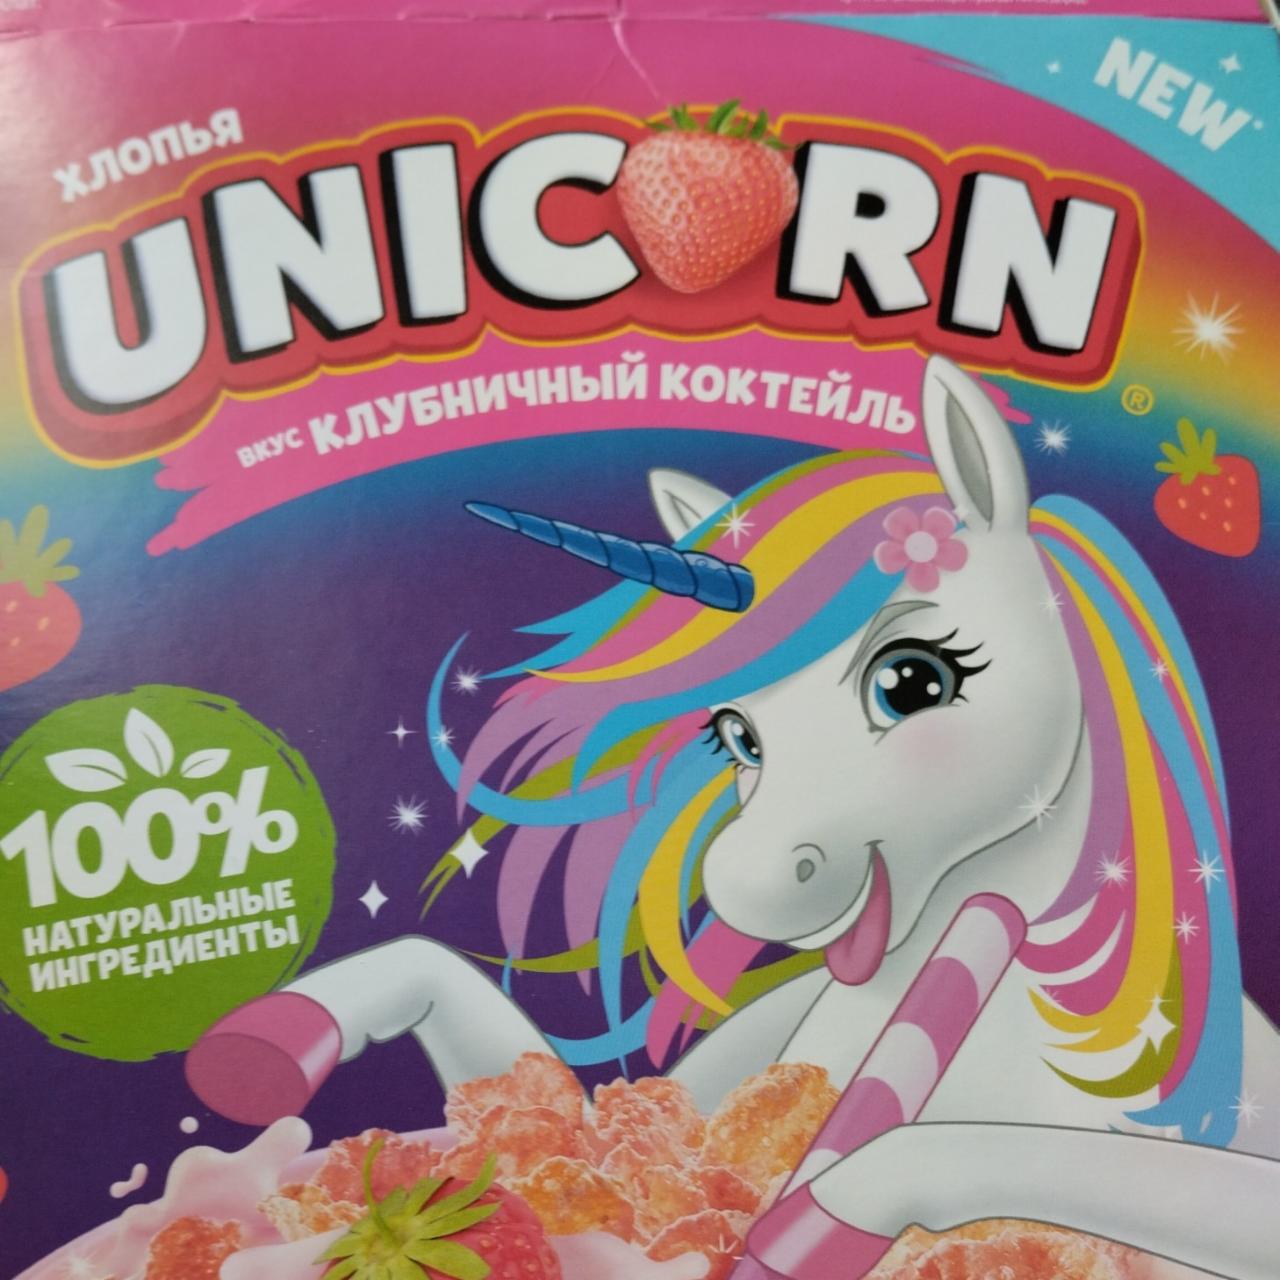 Фото - Хлопья вкус клубничный коктейль Unicorn